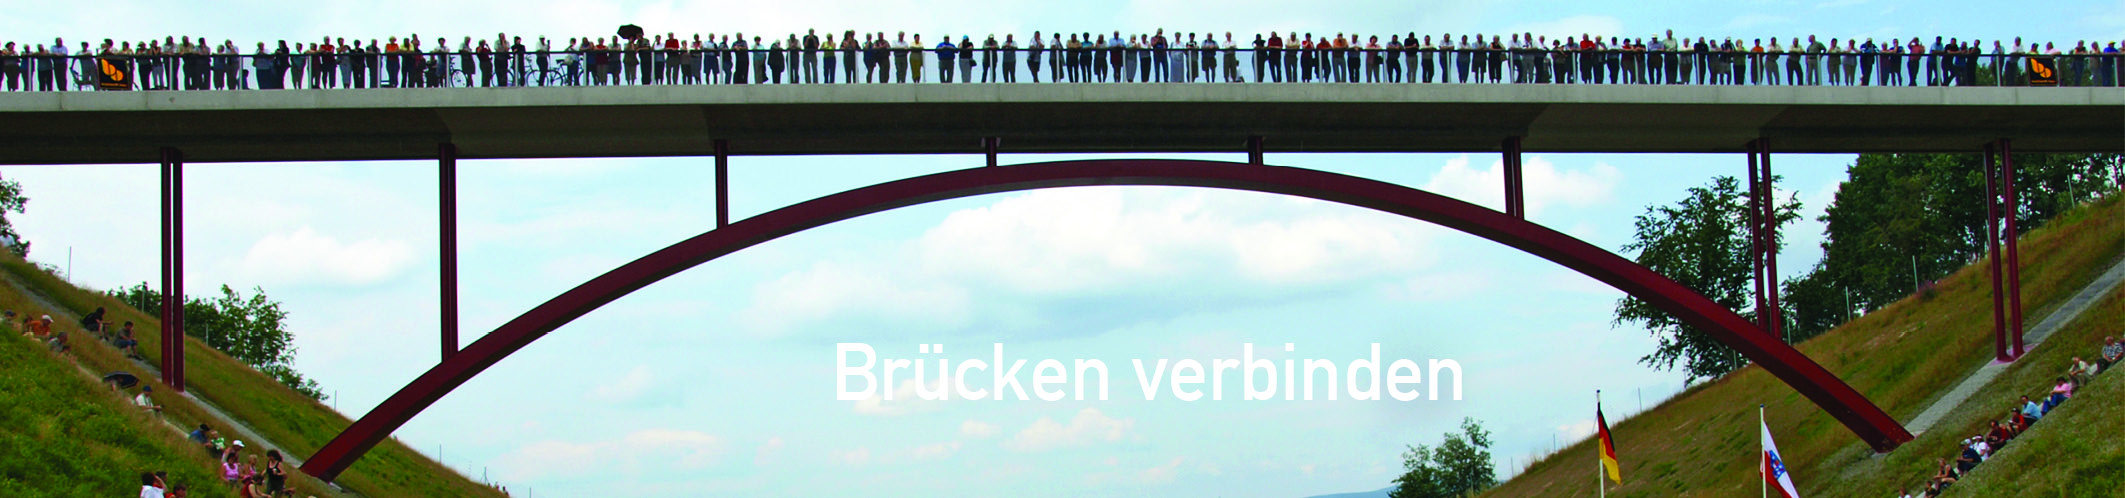 Banner Brückenbau 16